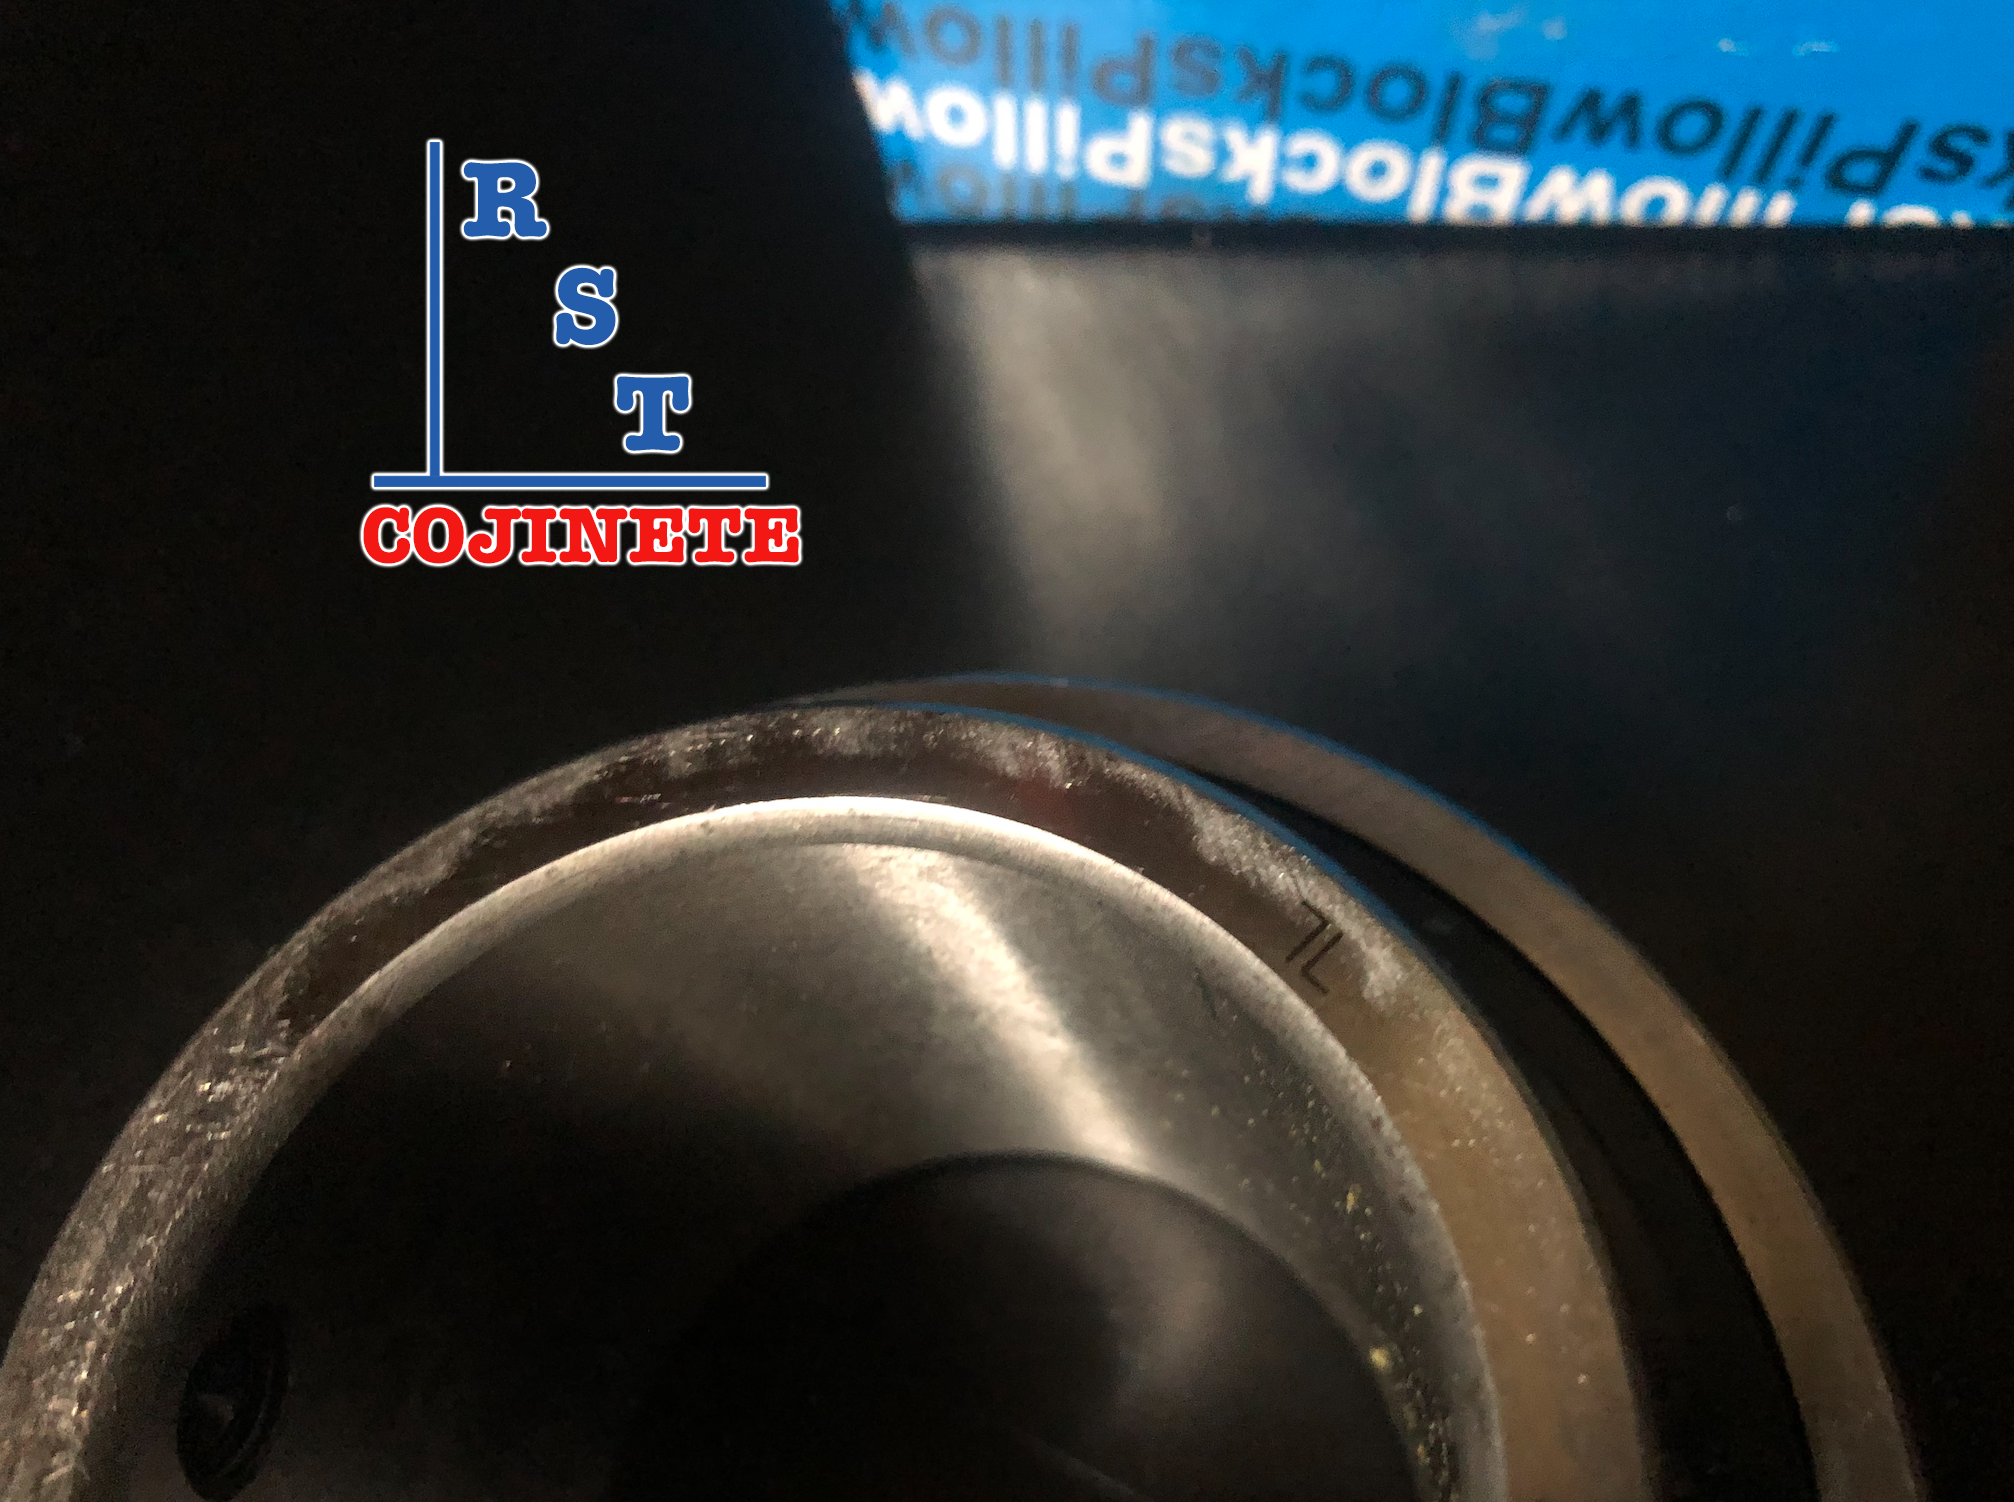 Cojinete insertable UC215-47 | Rodamiento para eje de 2-15/16" rígido de bolas con sello de hule para chumacera